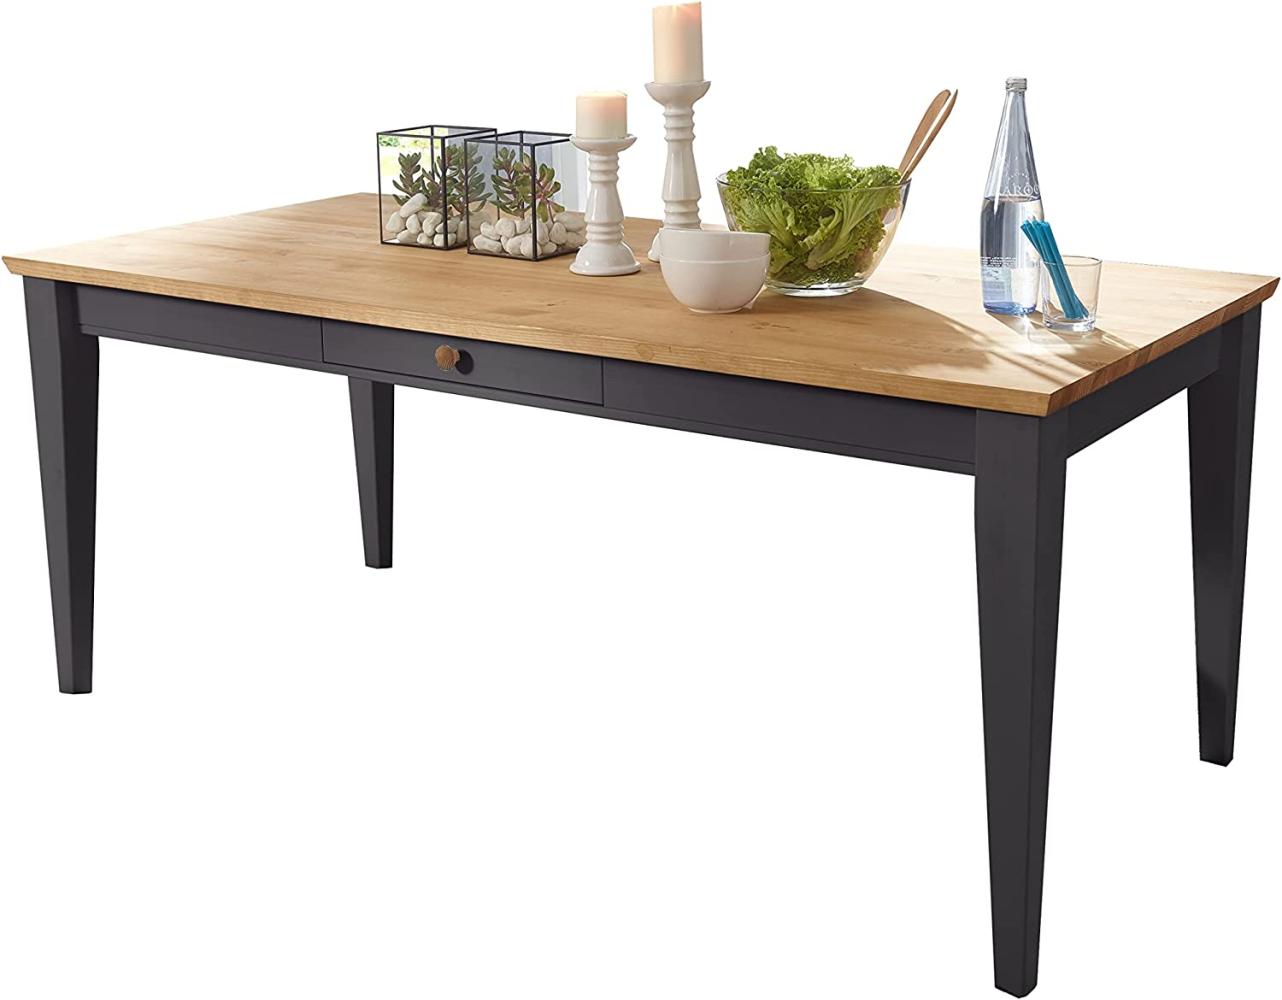 Woodroom Oslo Esstisch Tisch, Kiefer massiv, Grau gewachst, 180x90 cm Bild 1